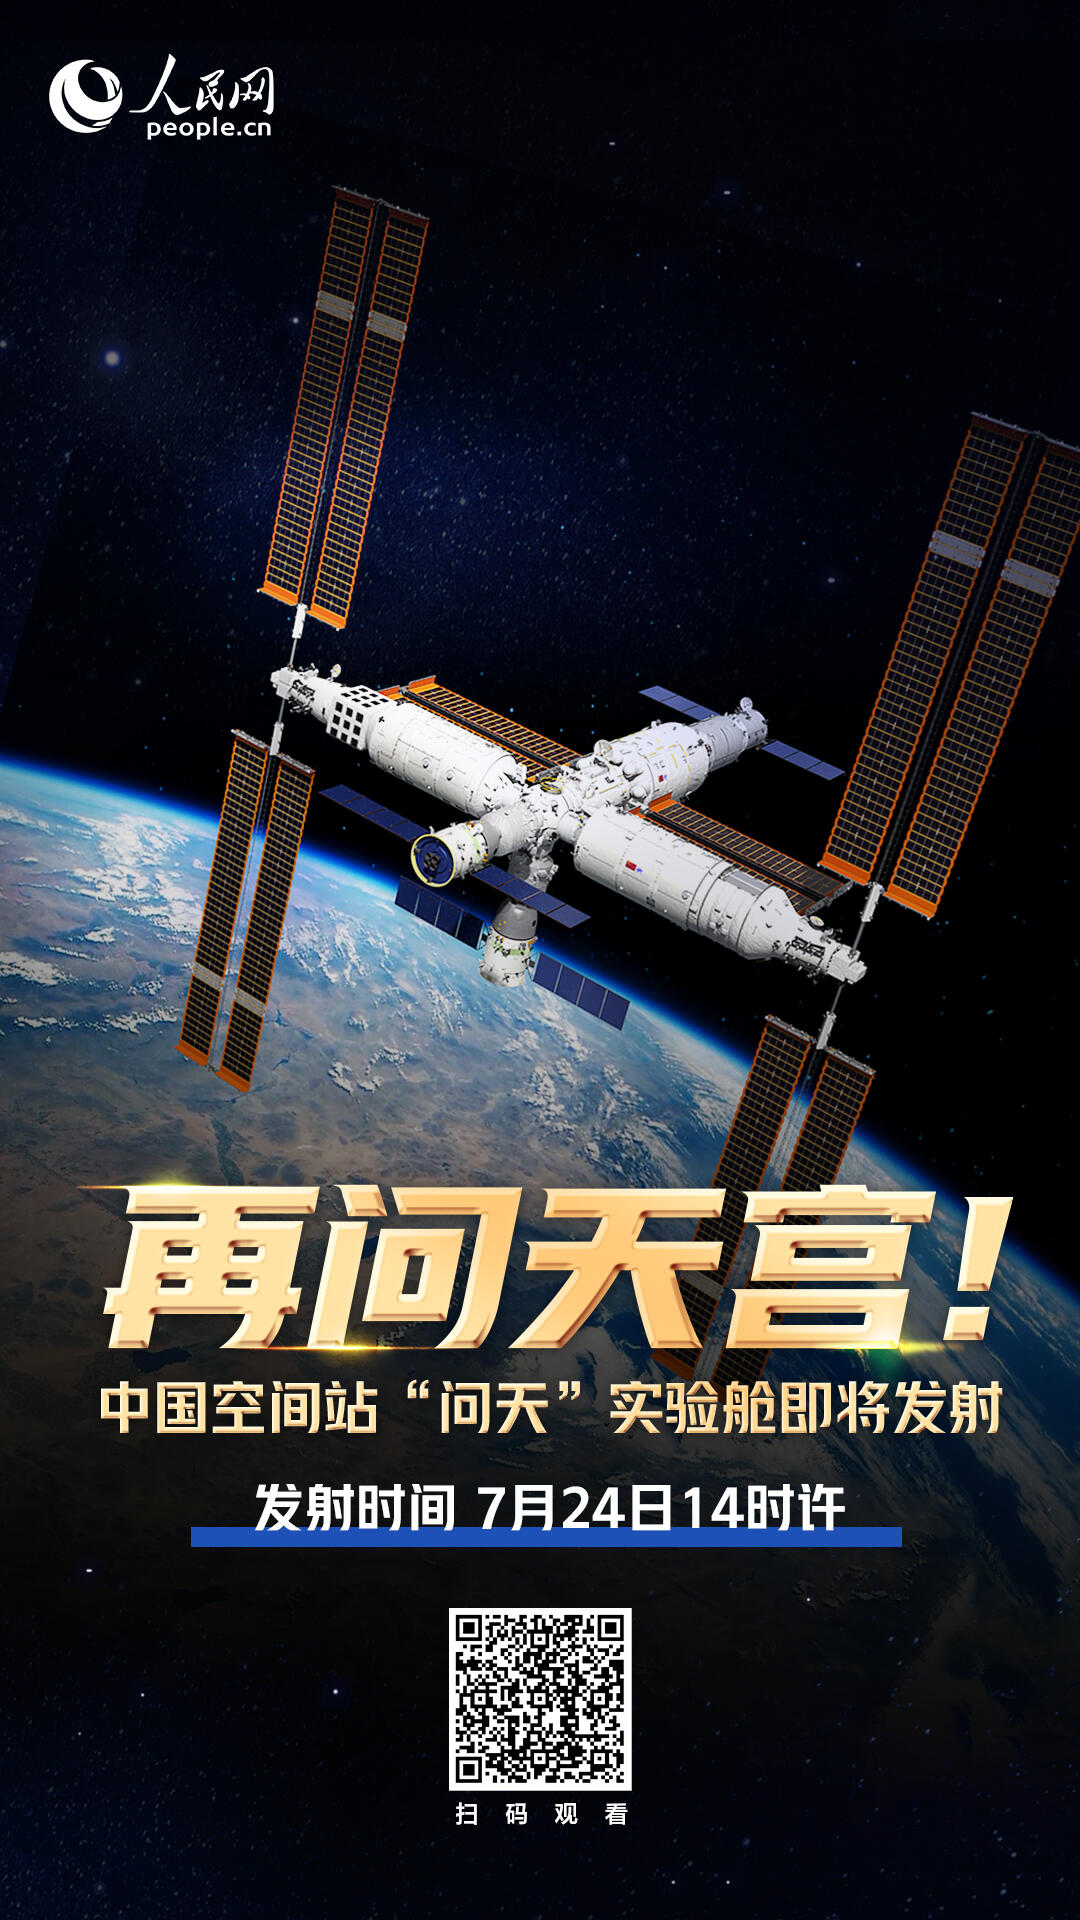 数万人看中国空间站问天发射是怎么回事，关于中国空间站 问天的新消息。